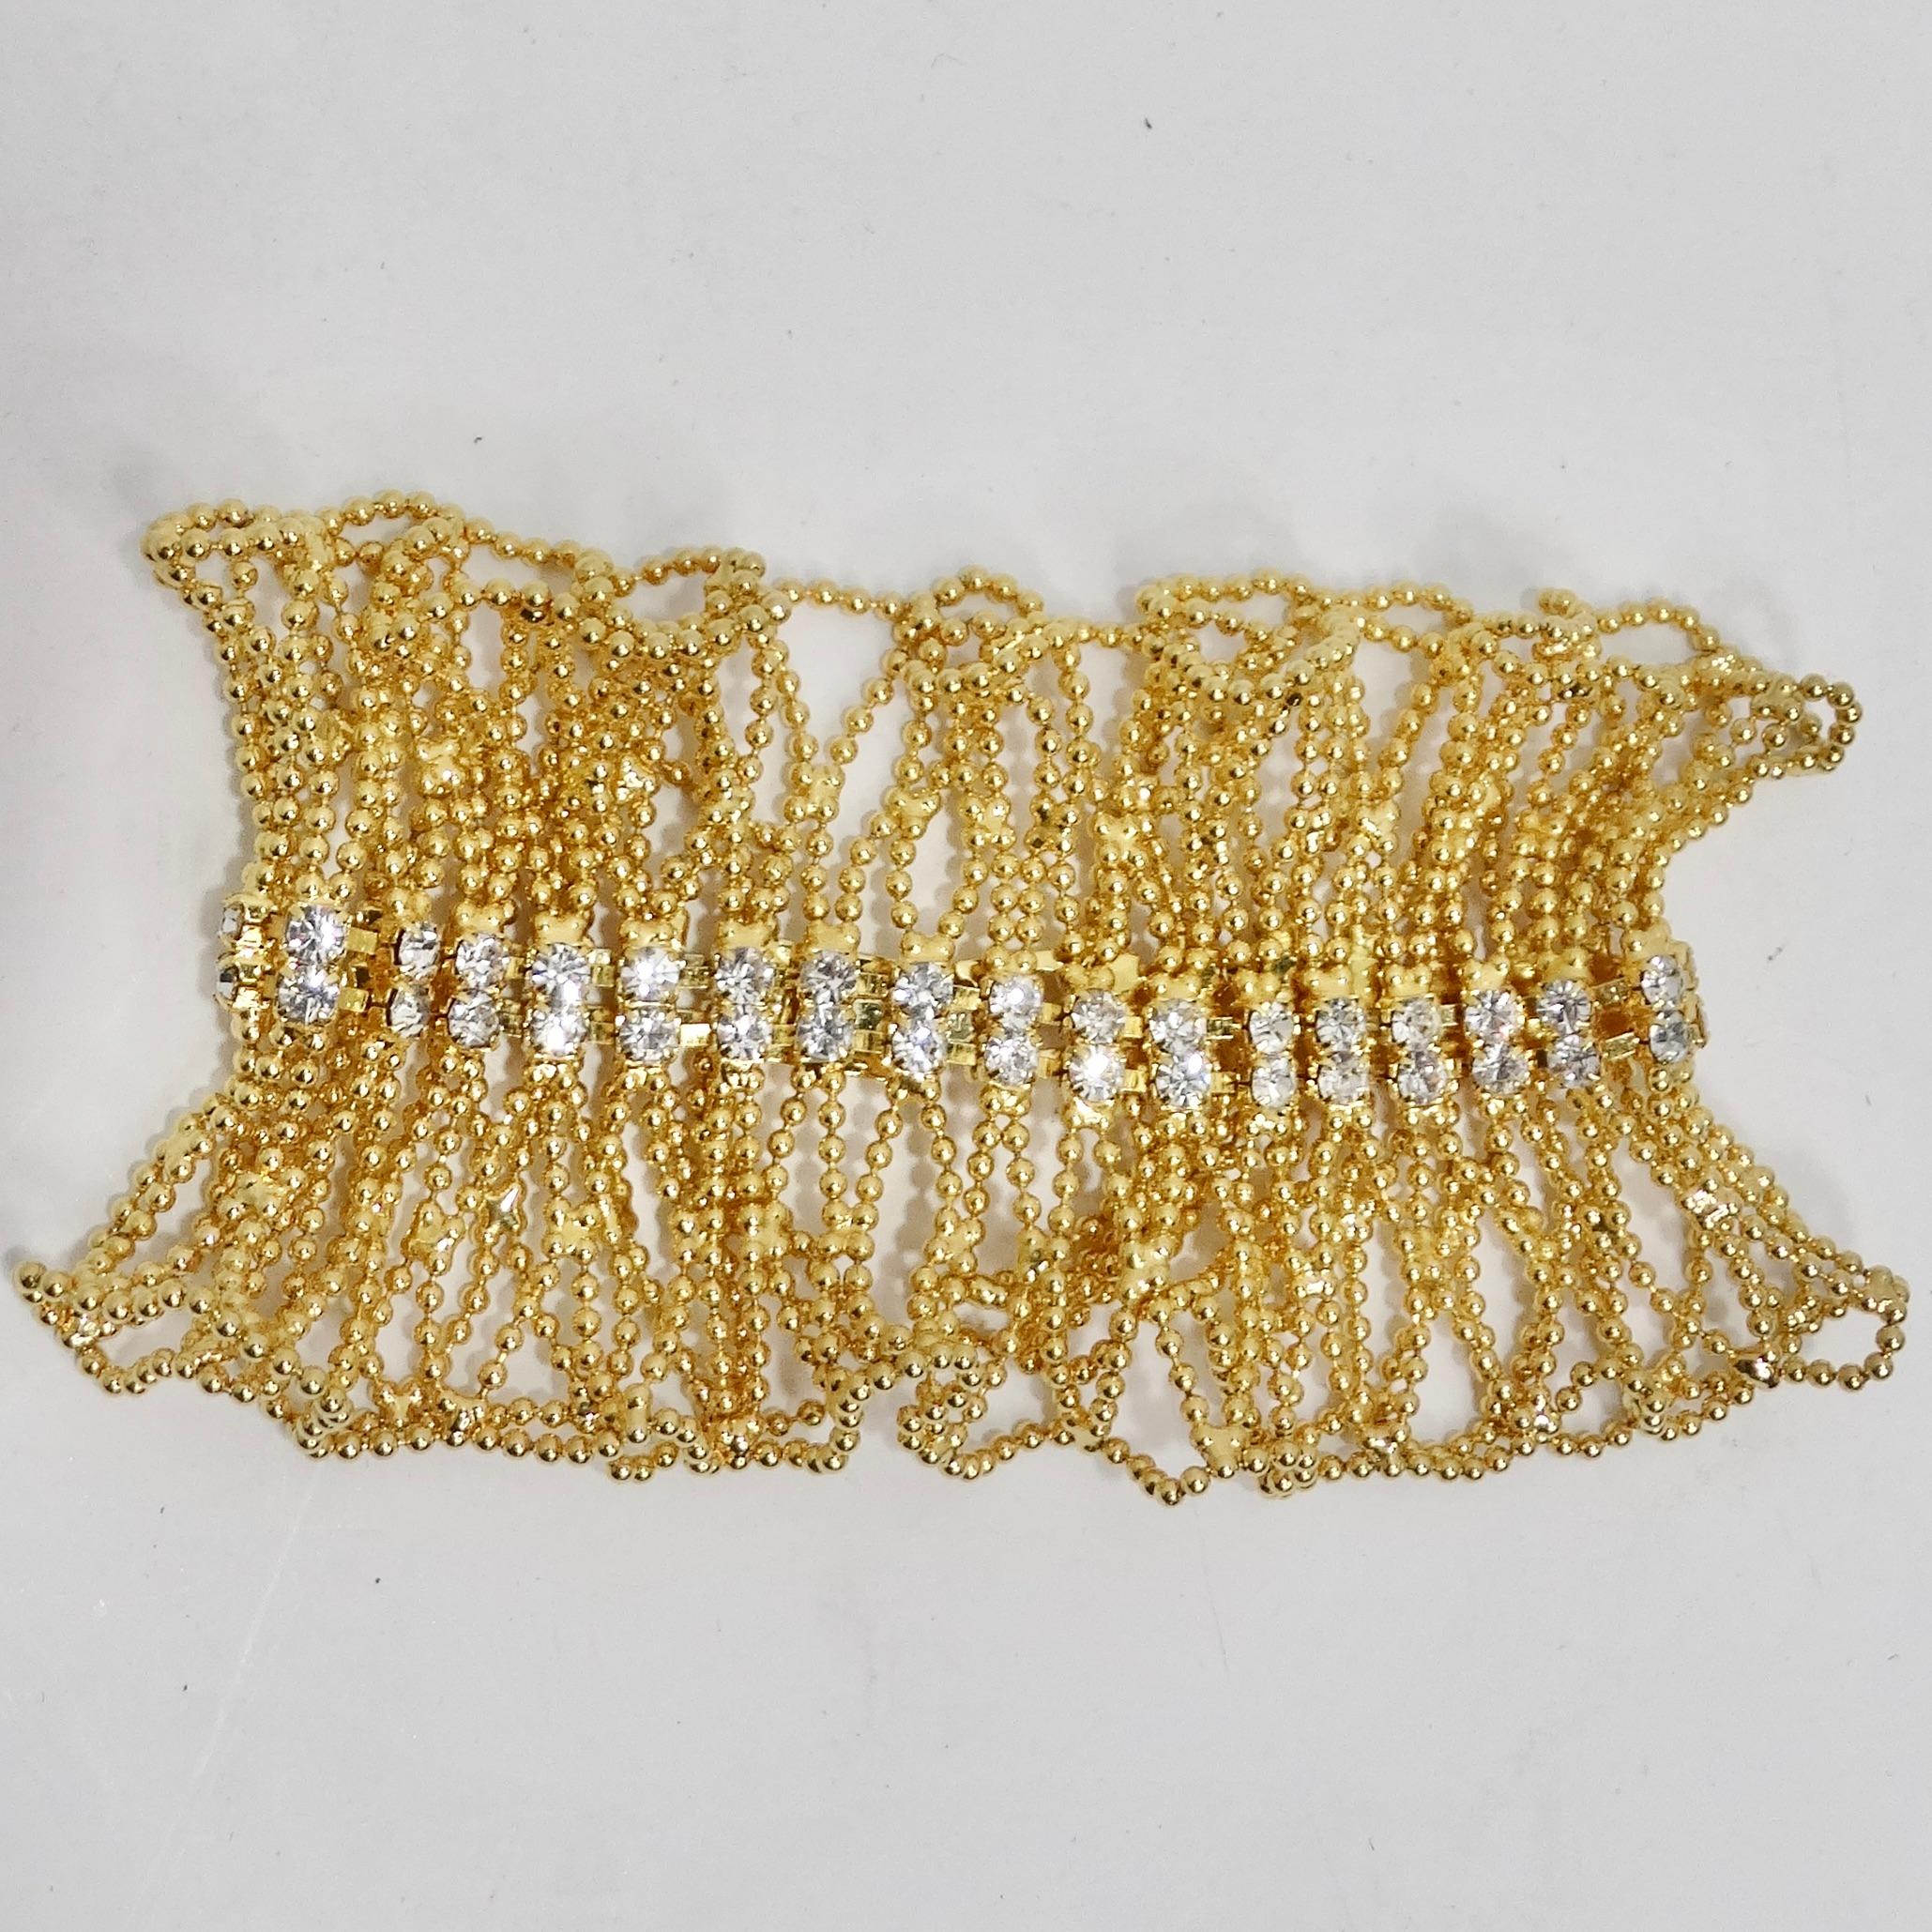 Erleben Sie die Anziehungskraft von Vintage-Glamour mit unserem exquisiten Armband in 18 Karat vergoldetem Swarovski Kristall. Dieses in den 1990er Jahren gefertigte Armband ist eine atemberaubende Verschmelzung von Weiblichkeit und Dramatik. Es